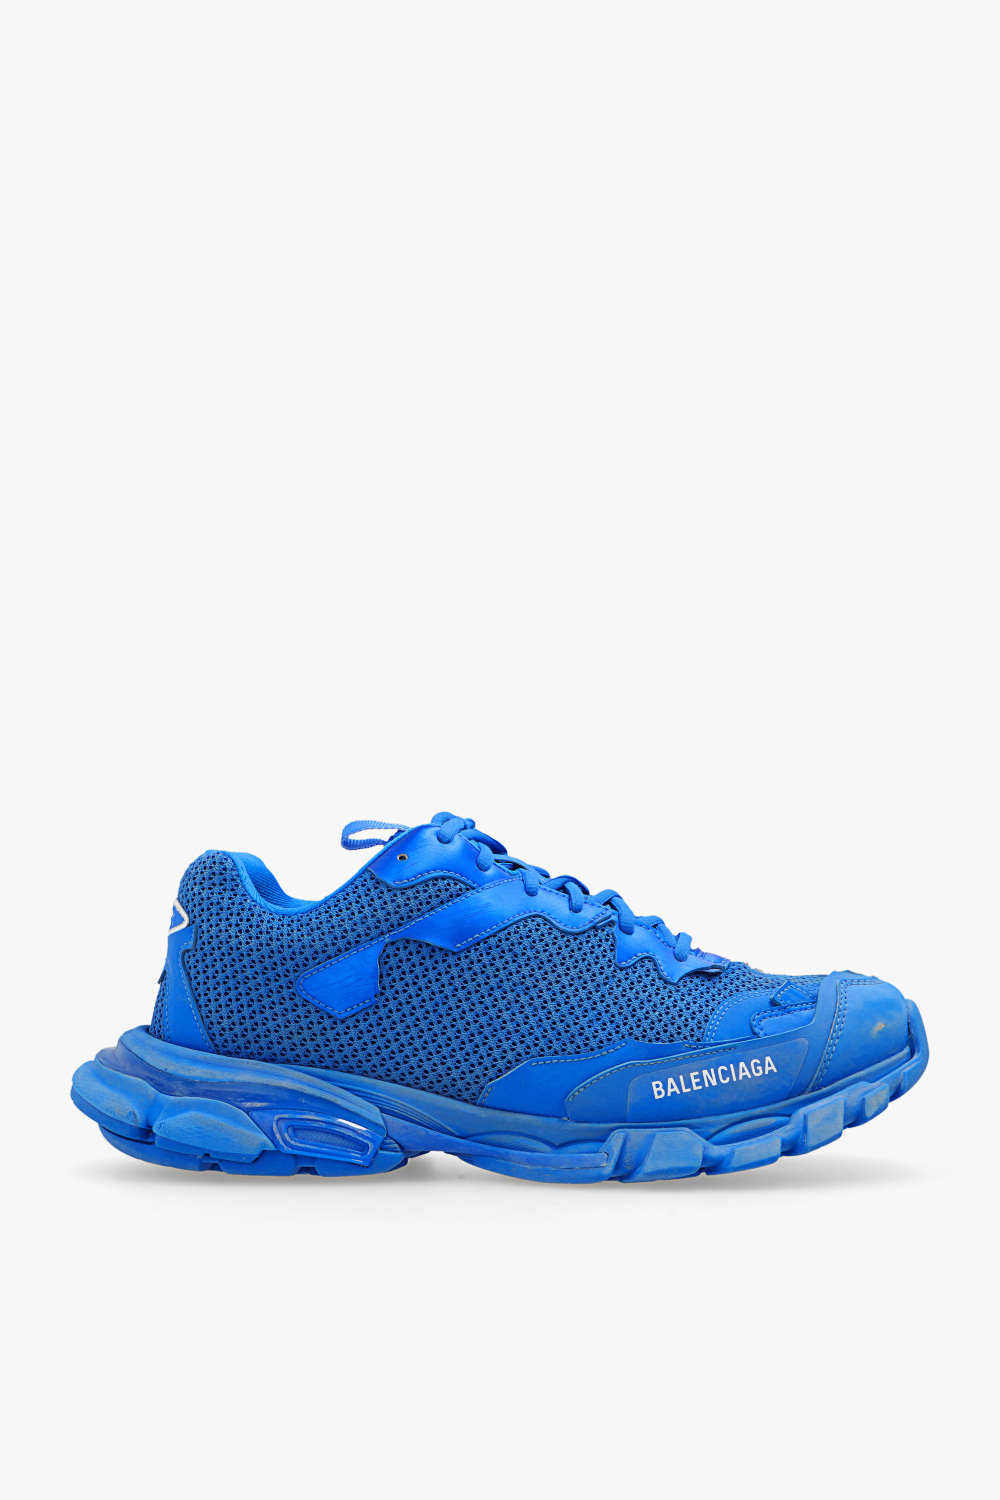 Blue sneakers Balenciaga - zapatillas de running Reebok talla 44 negras - Morocco